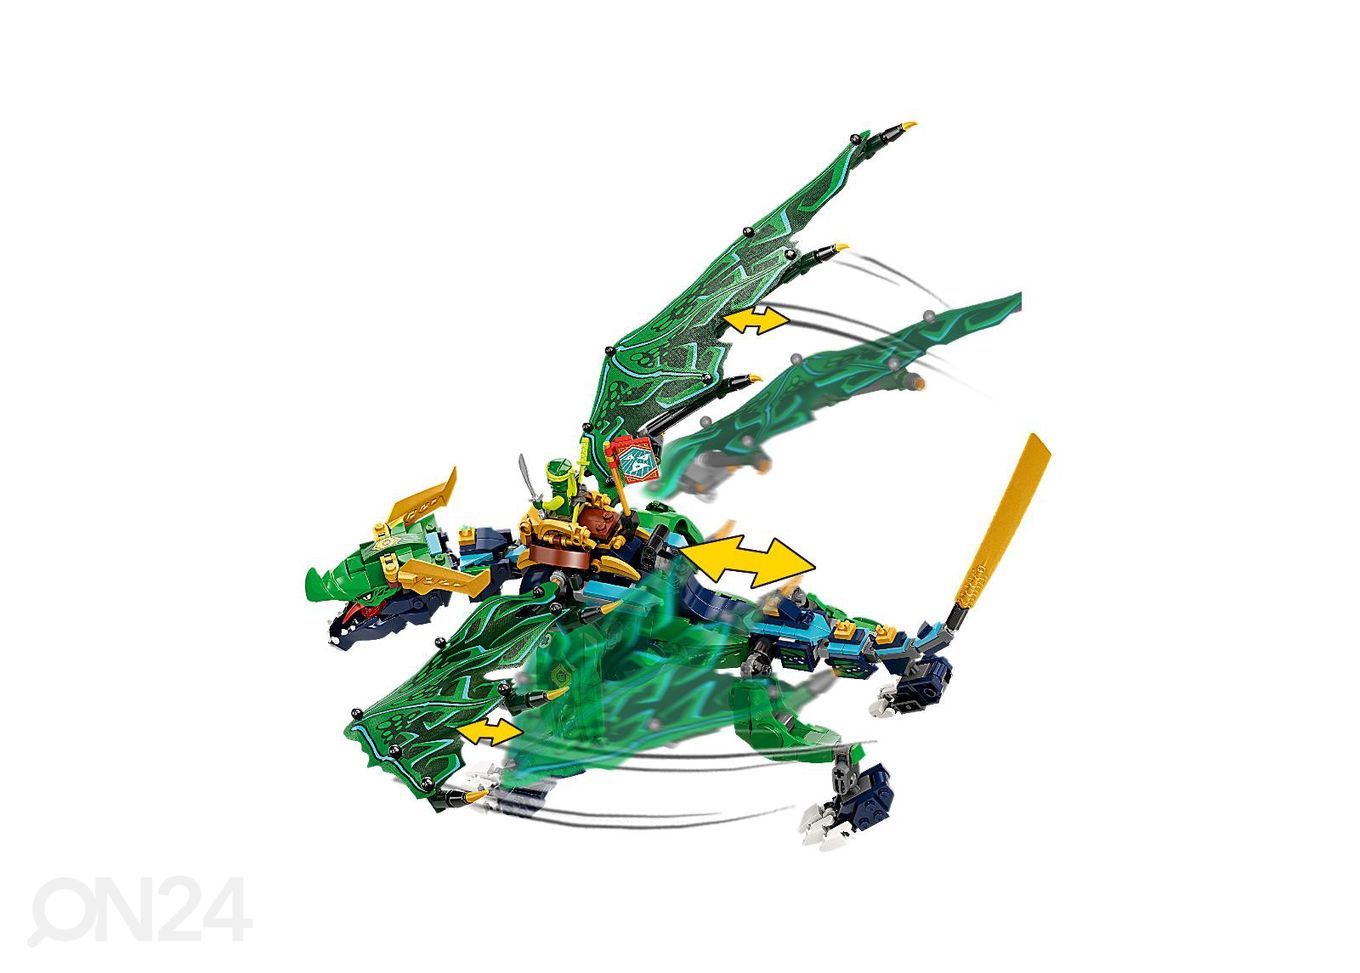 LEGO Ninjago Lloydi legendaarne draakon suurendatud